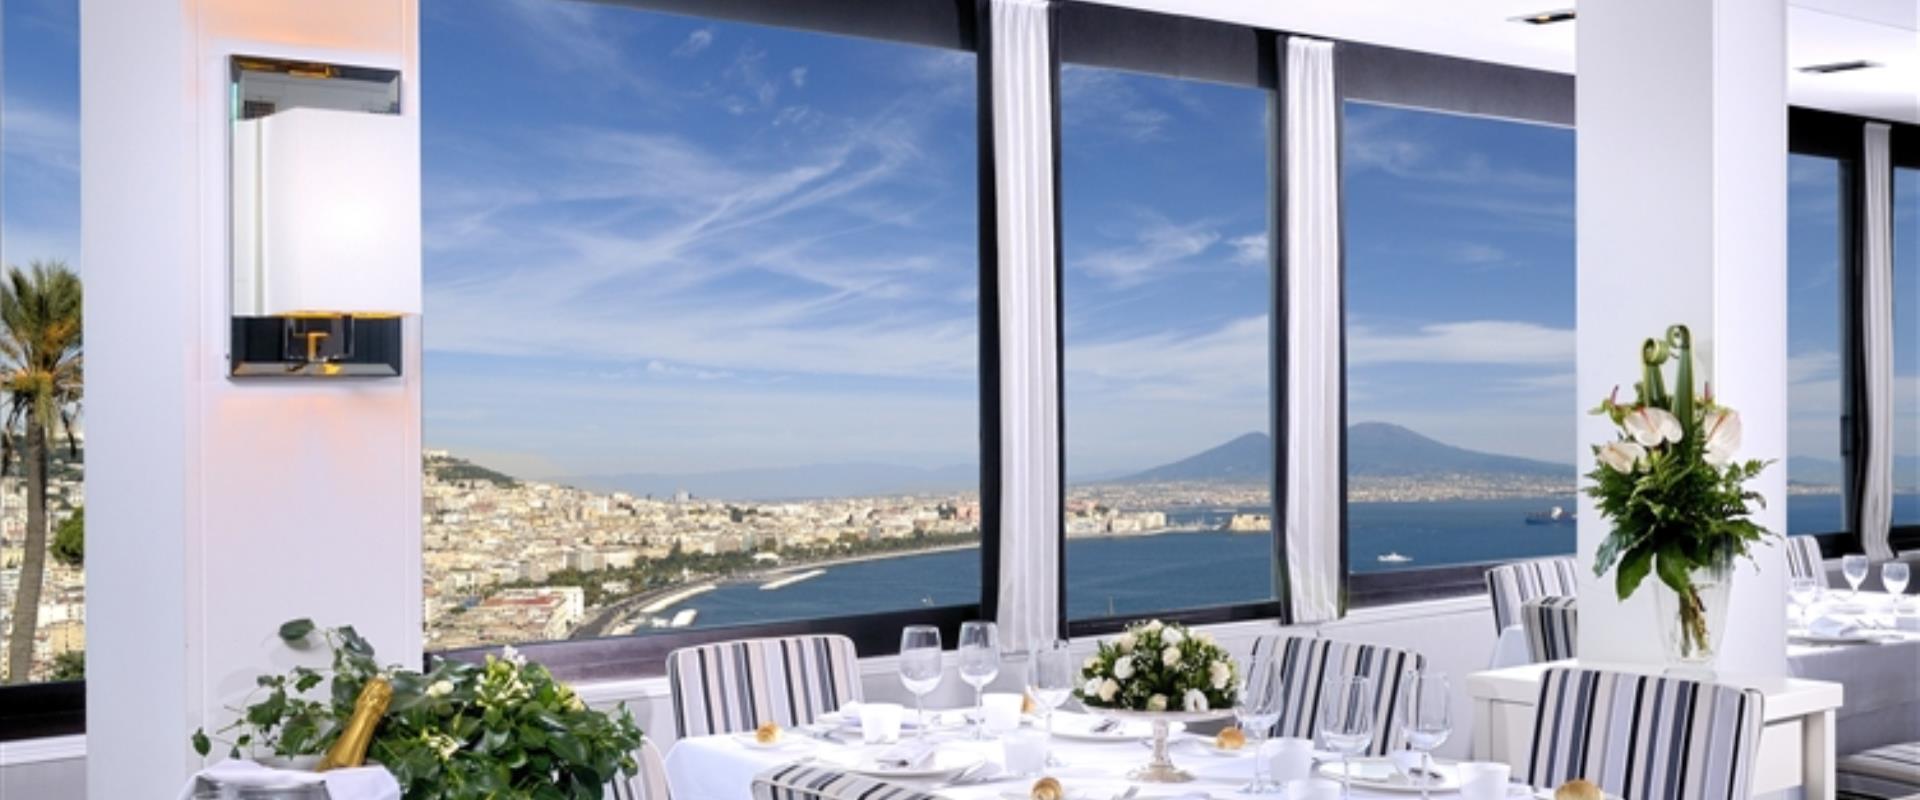 вы ищете отель в Napoli с отличным рестораном?Забронируйте в BW Signature Collection Hotel Paradiso.